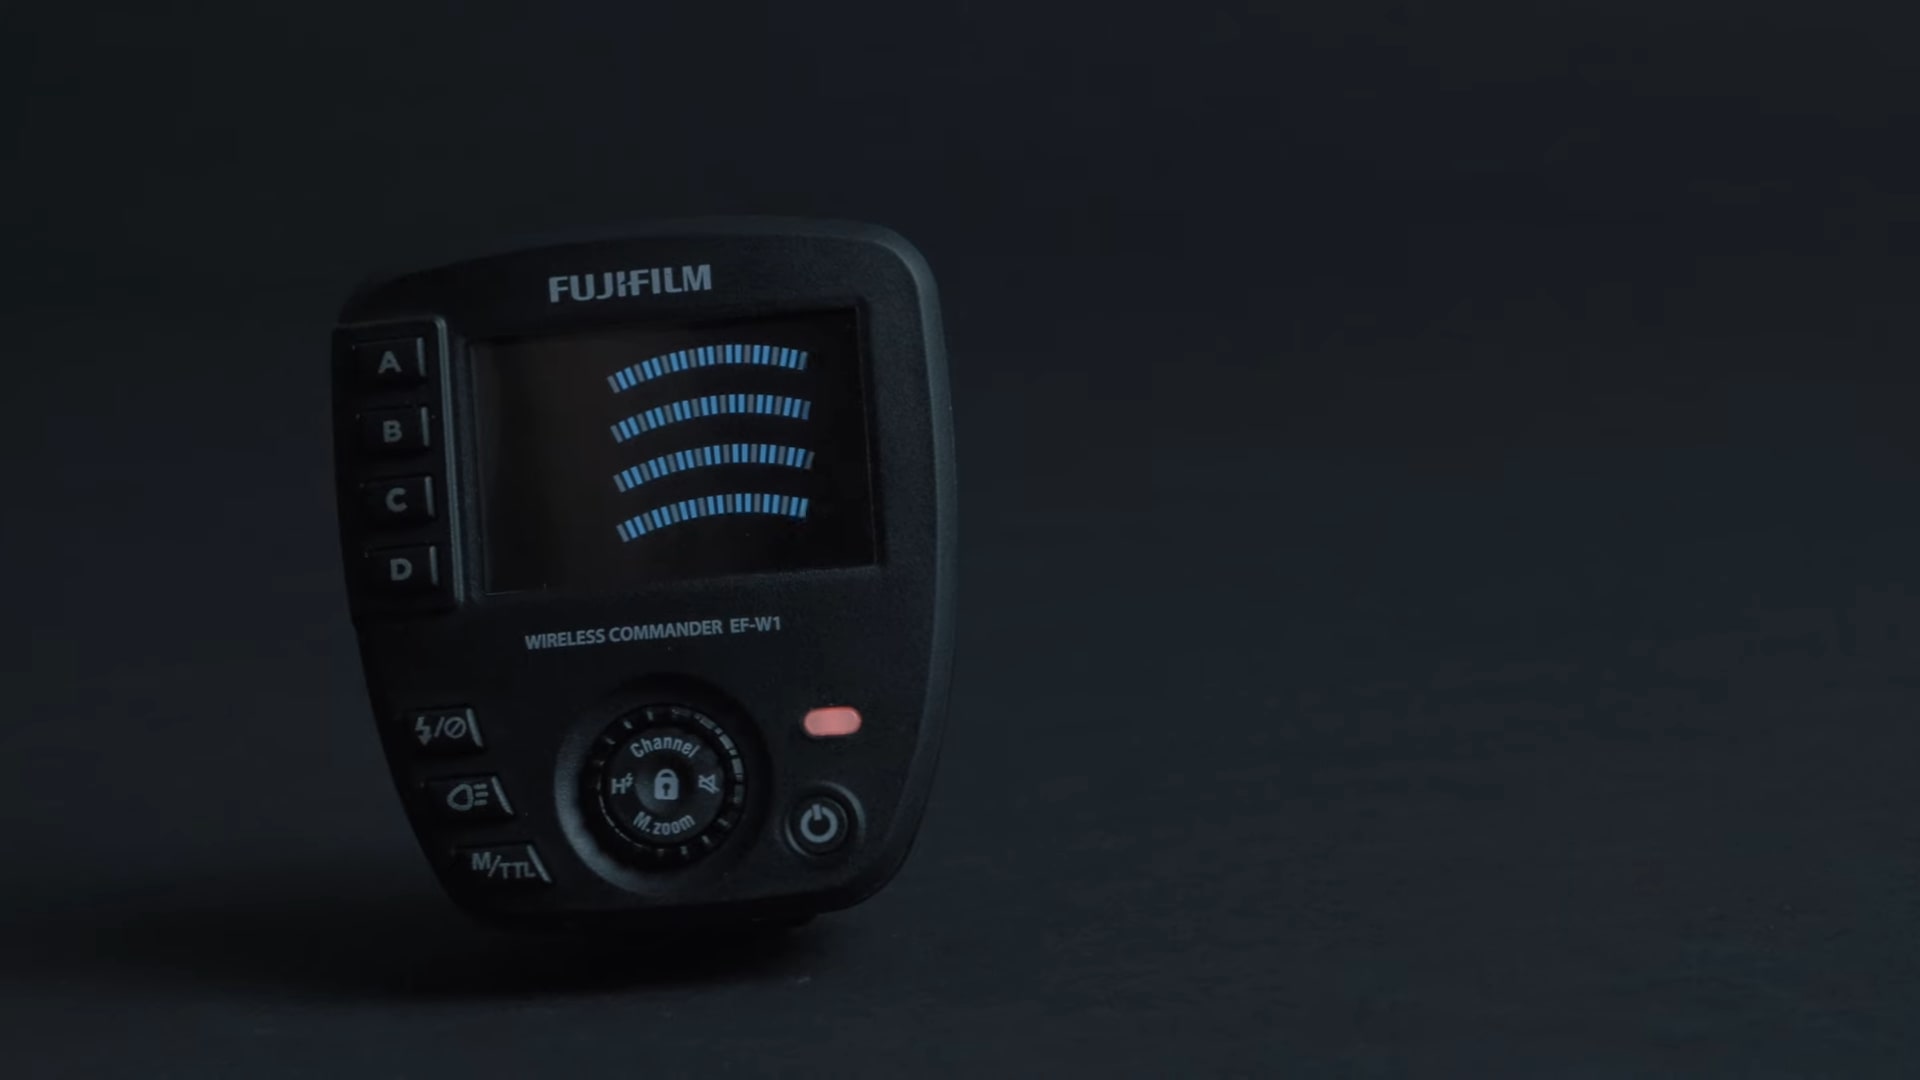 Fujifilm ra mắt flash EF-60 và commander EF-W1 cho dòng máy ảnh X và GFX